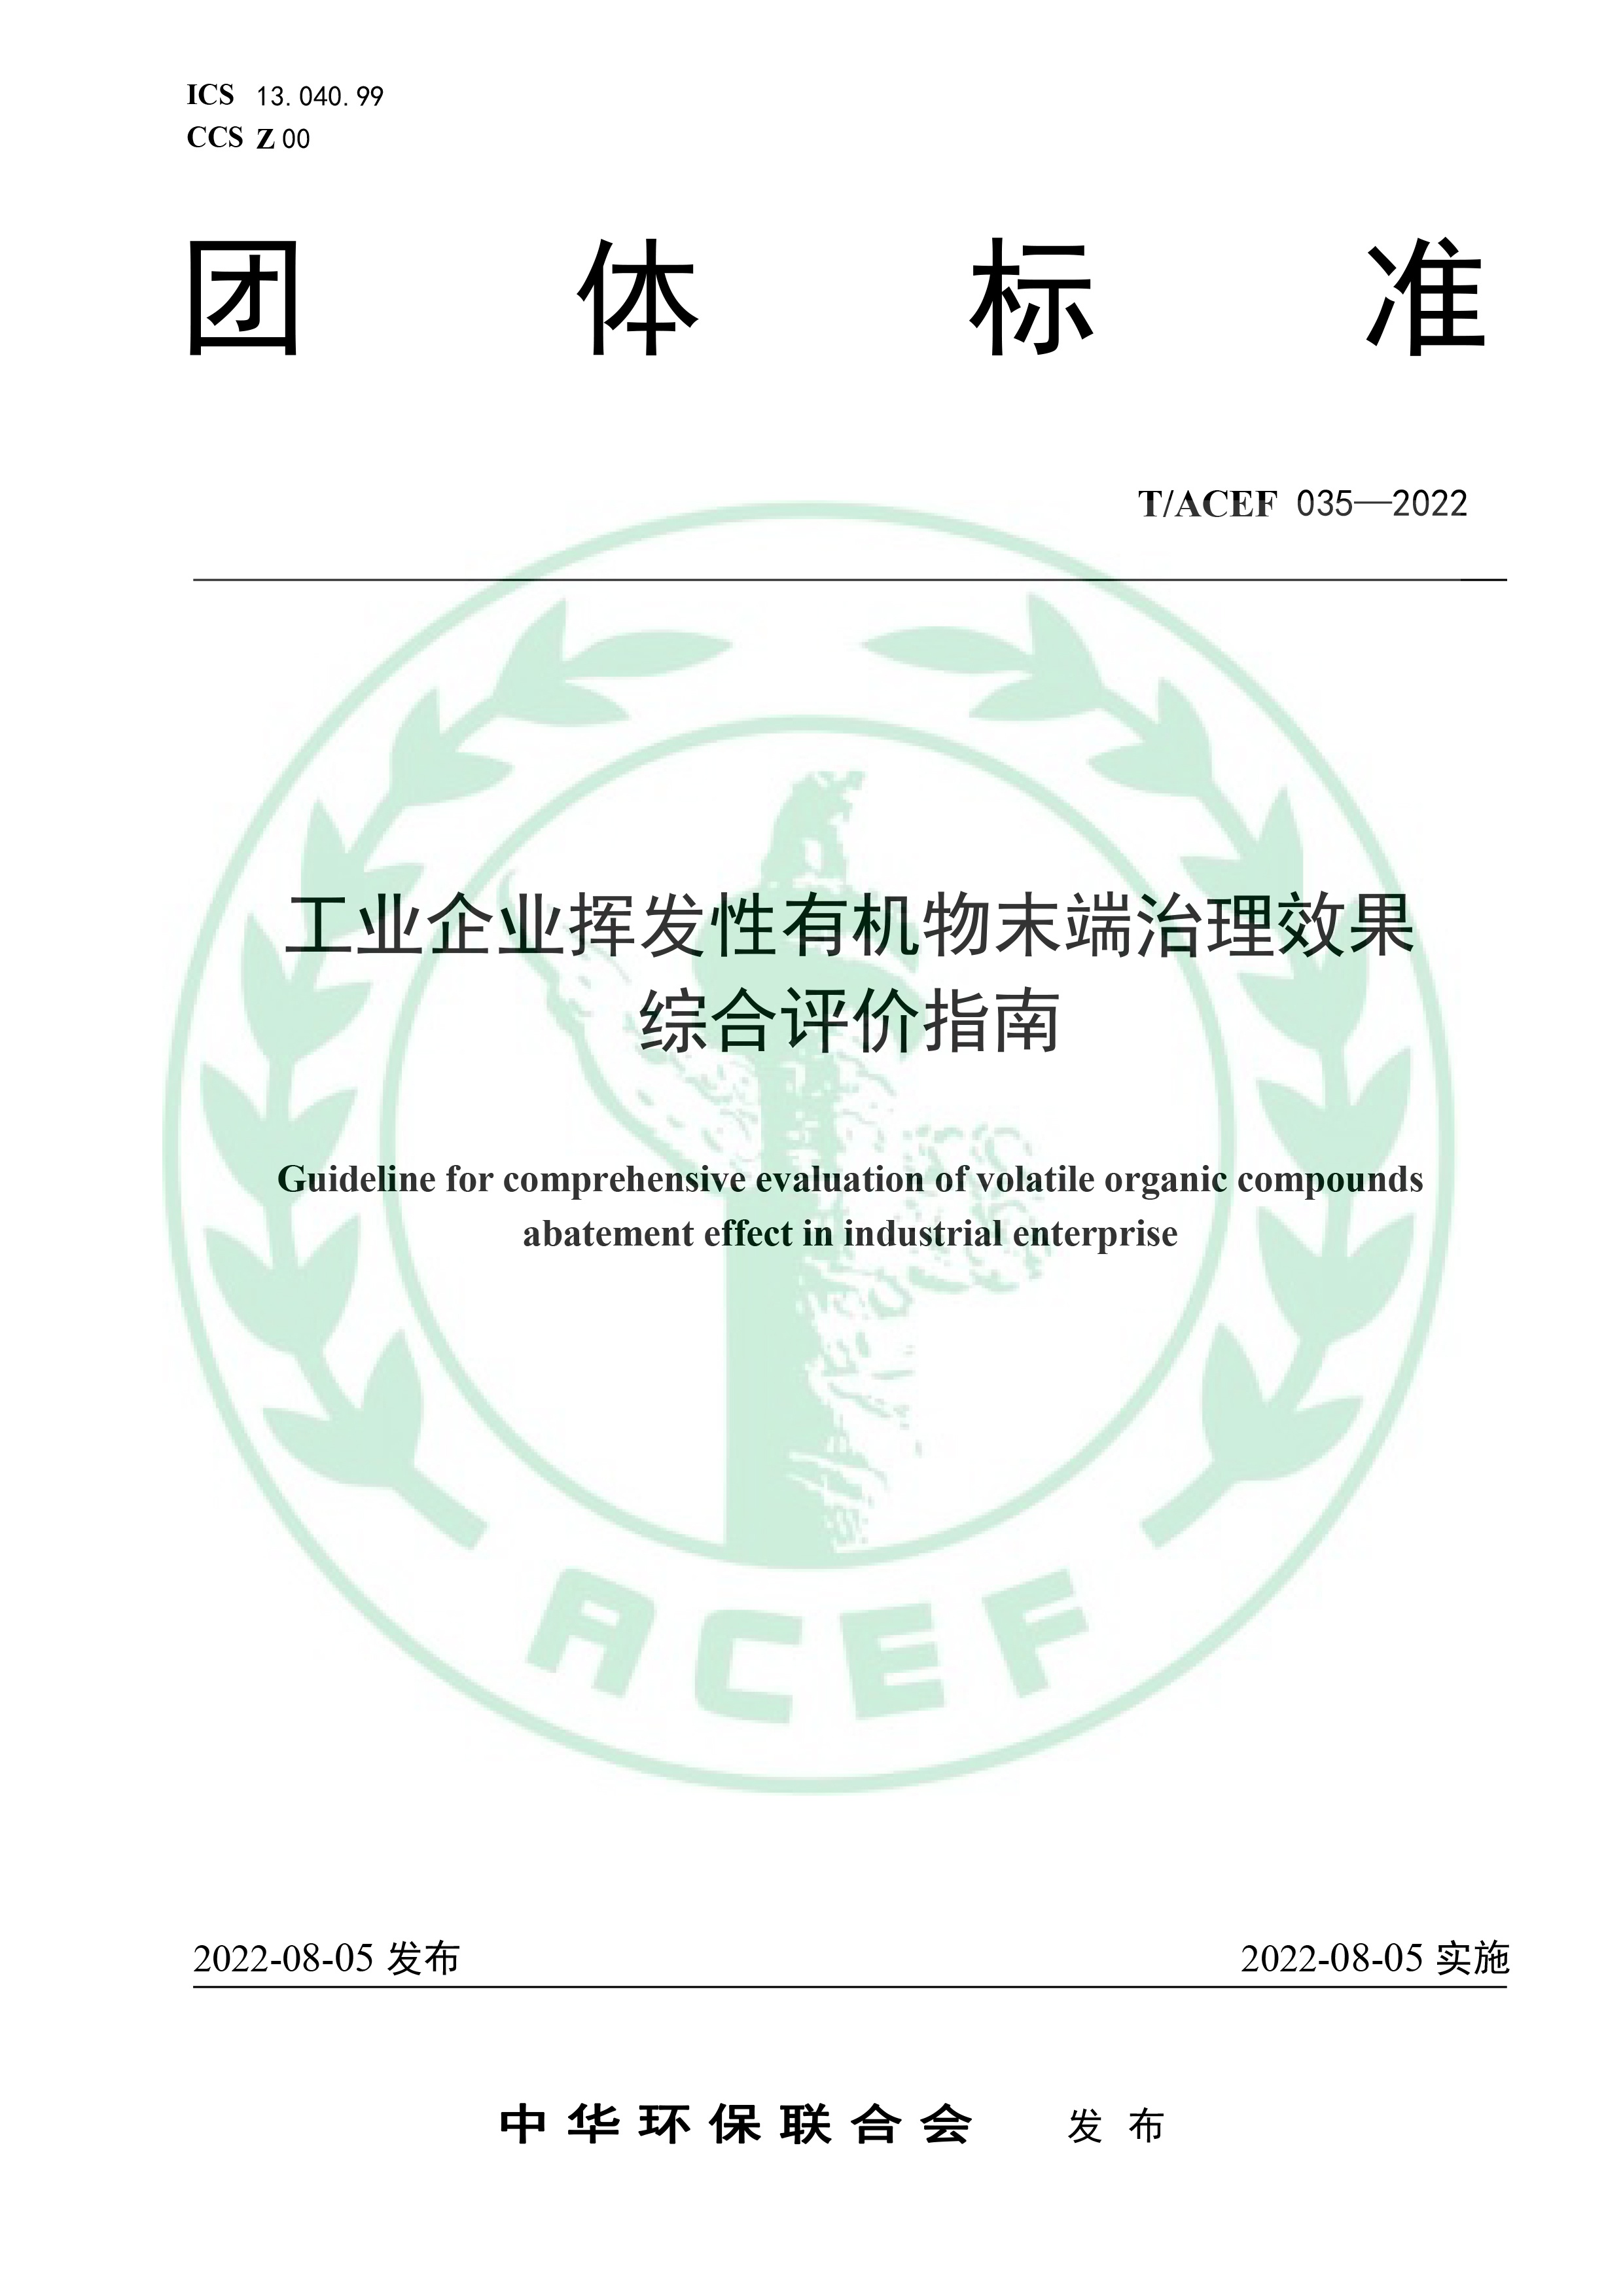 【发布稿】《工业企业挥发性有机物末端治理效果综合评价指南》（T ACEF 035—2022）-1.jpg